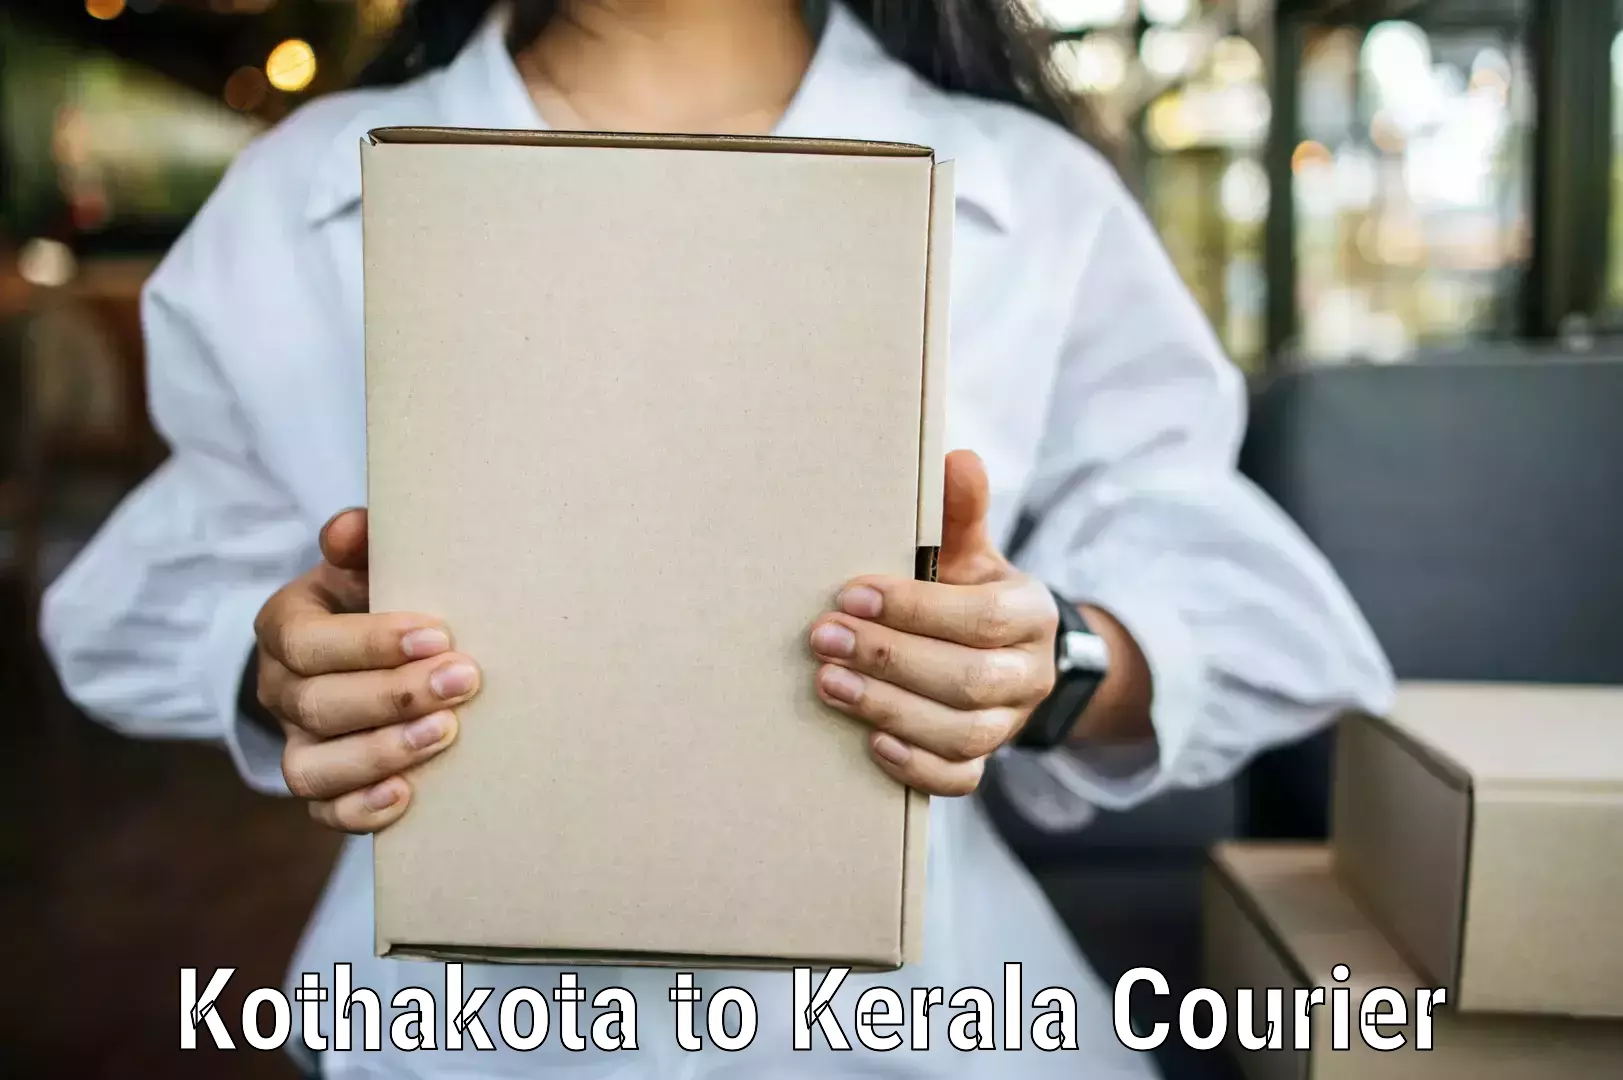 Residential courier service Kothakota to Changanacherry